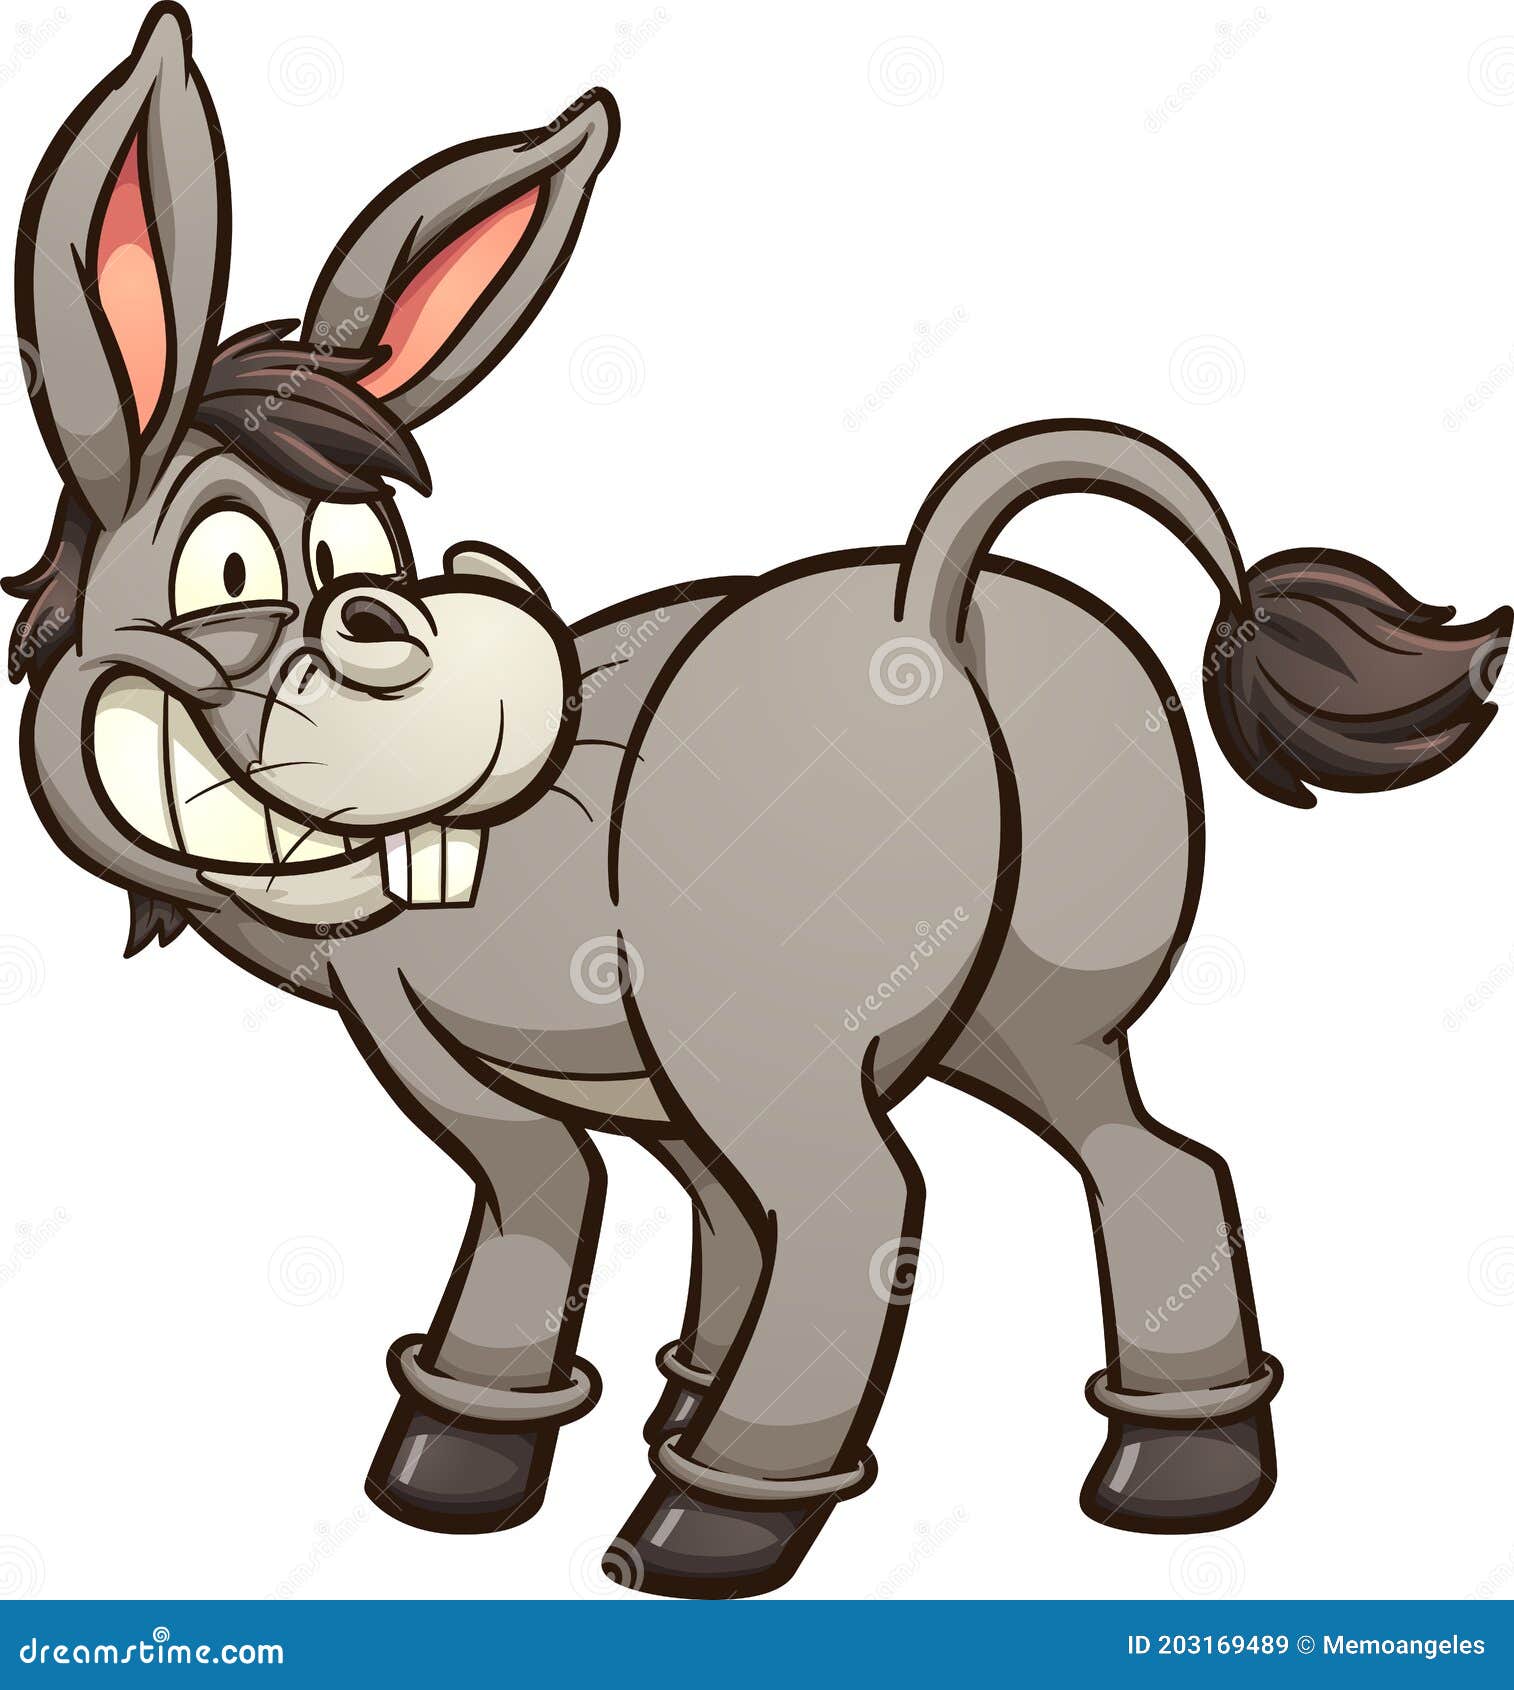 Cartoon Donkey Stock Illustrations – 7,665 Cartoon Donkey Stock  Illustrations, Vectors & Clipart - Dreamstime